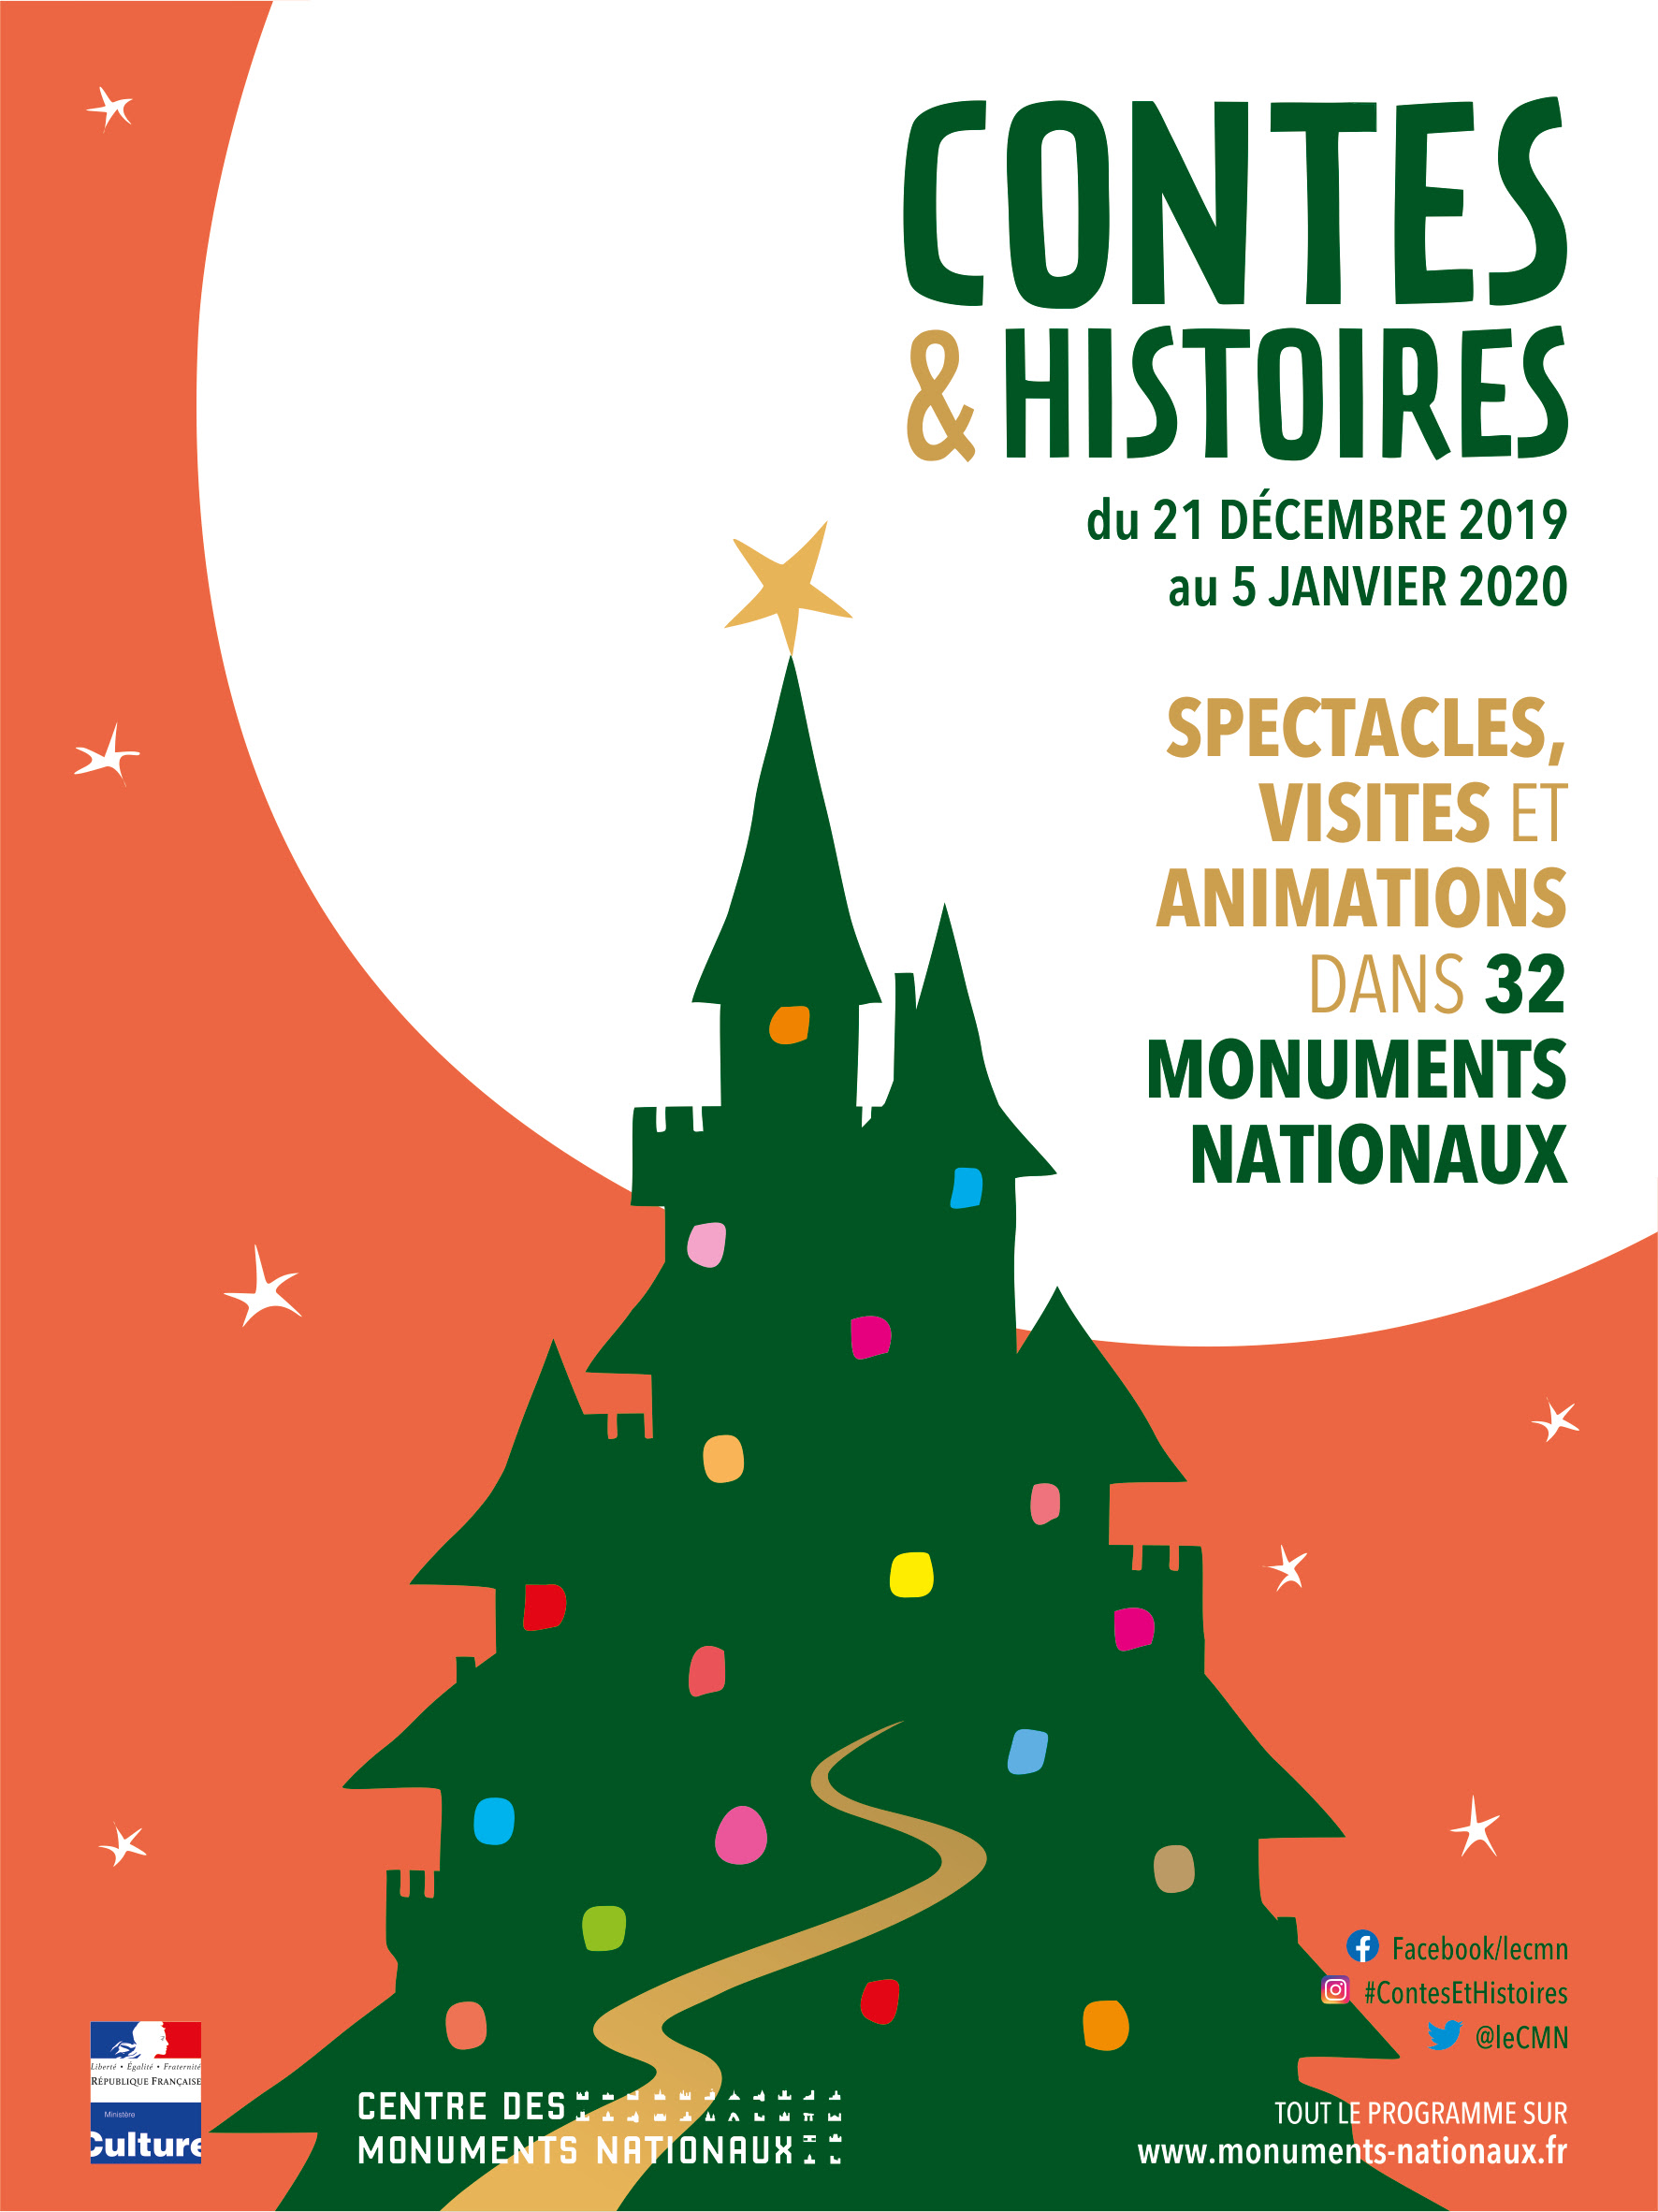 Centre des monuments nationaux : "Contes & histoires", vivez la magie de Noël 